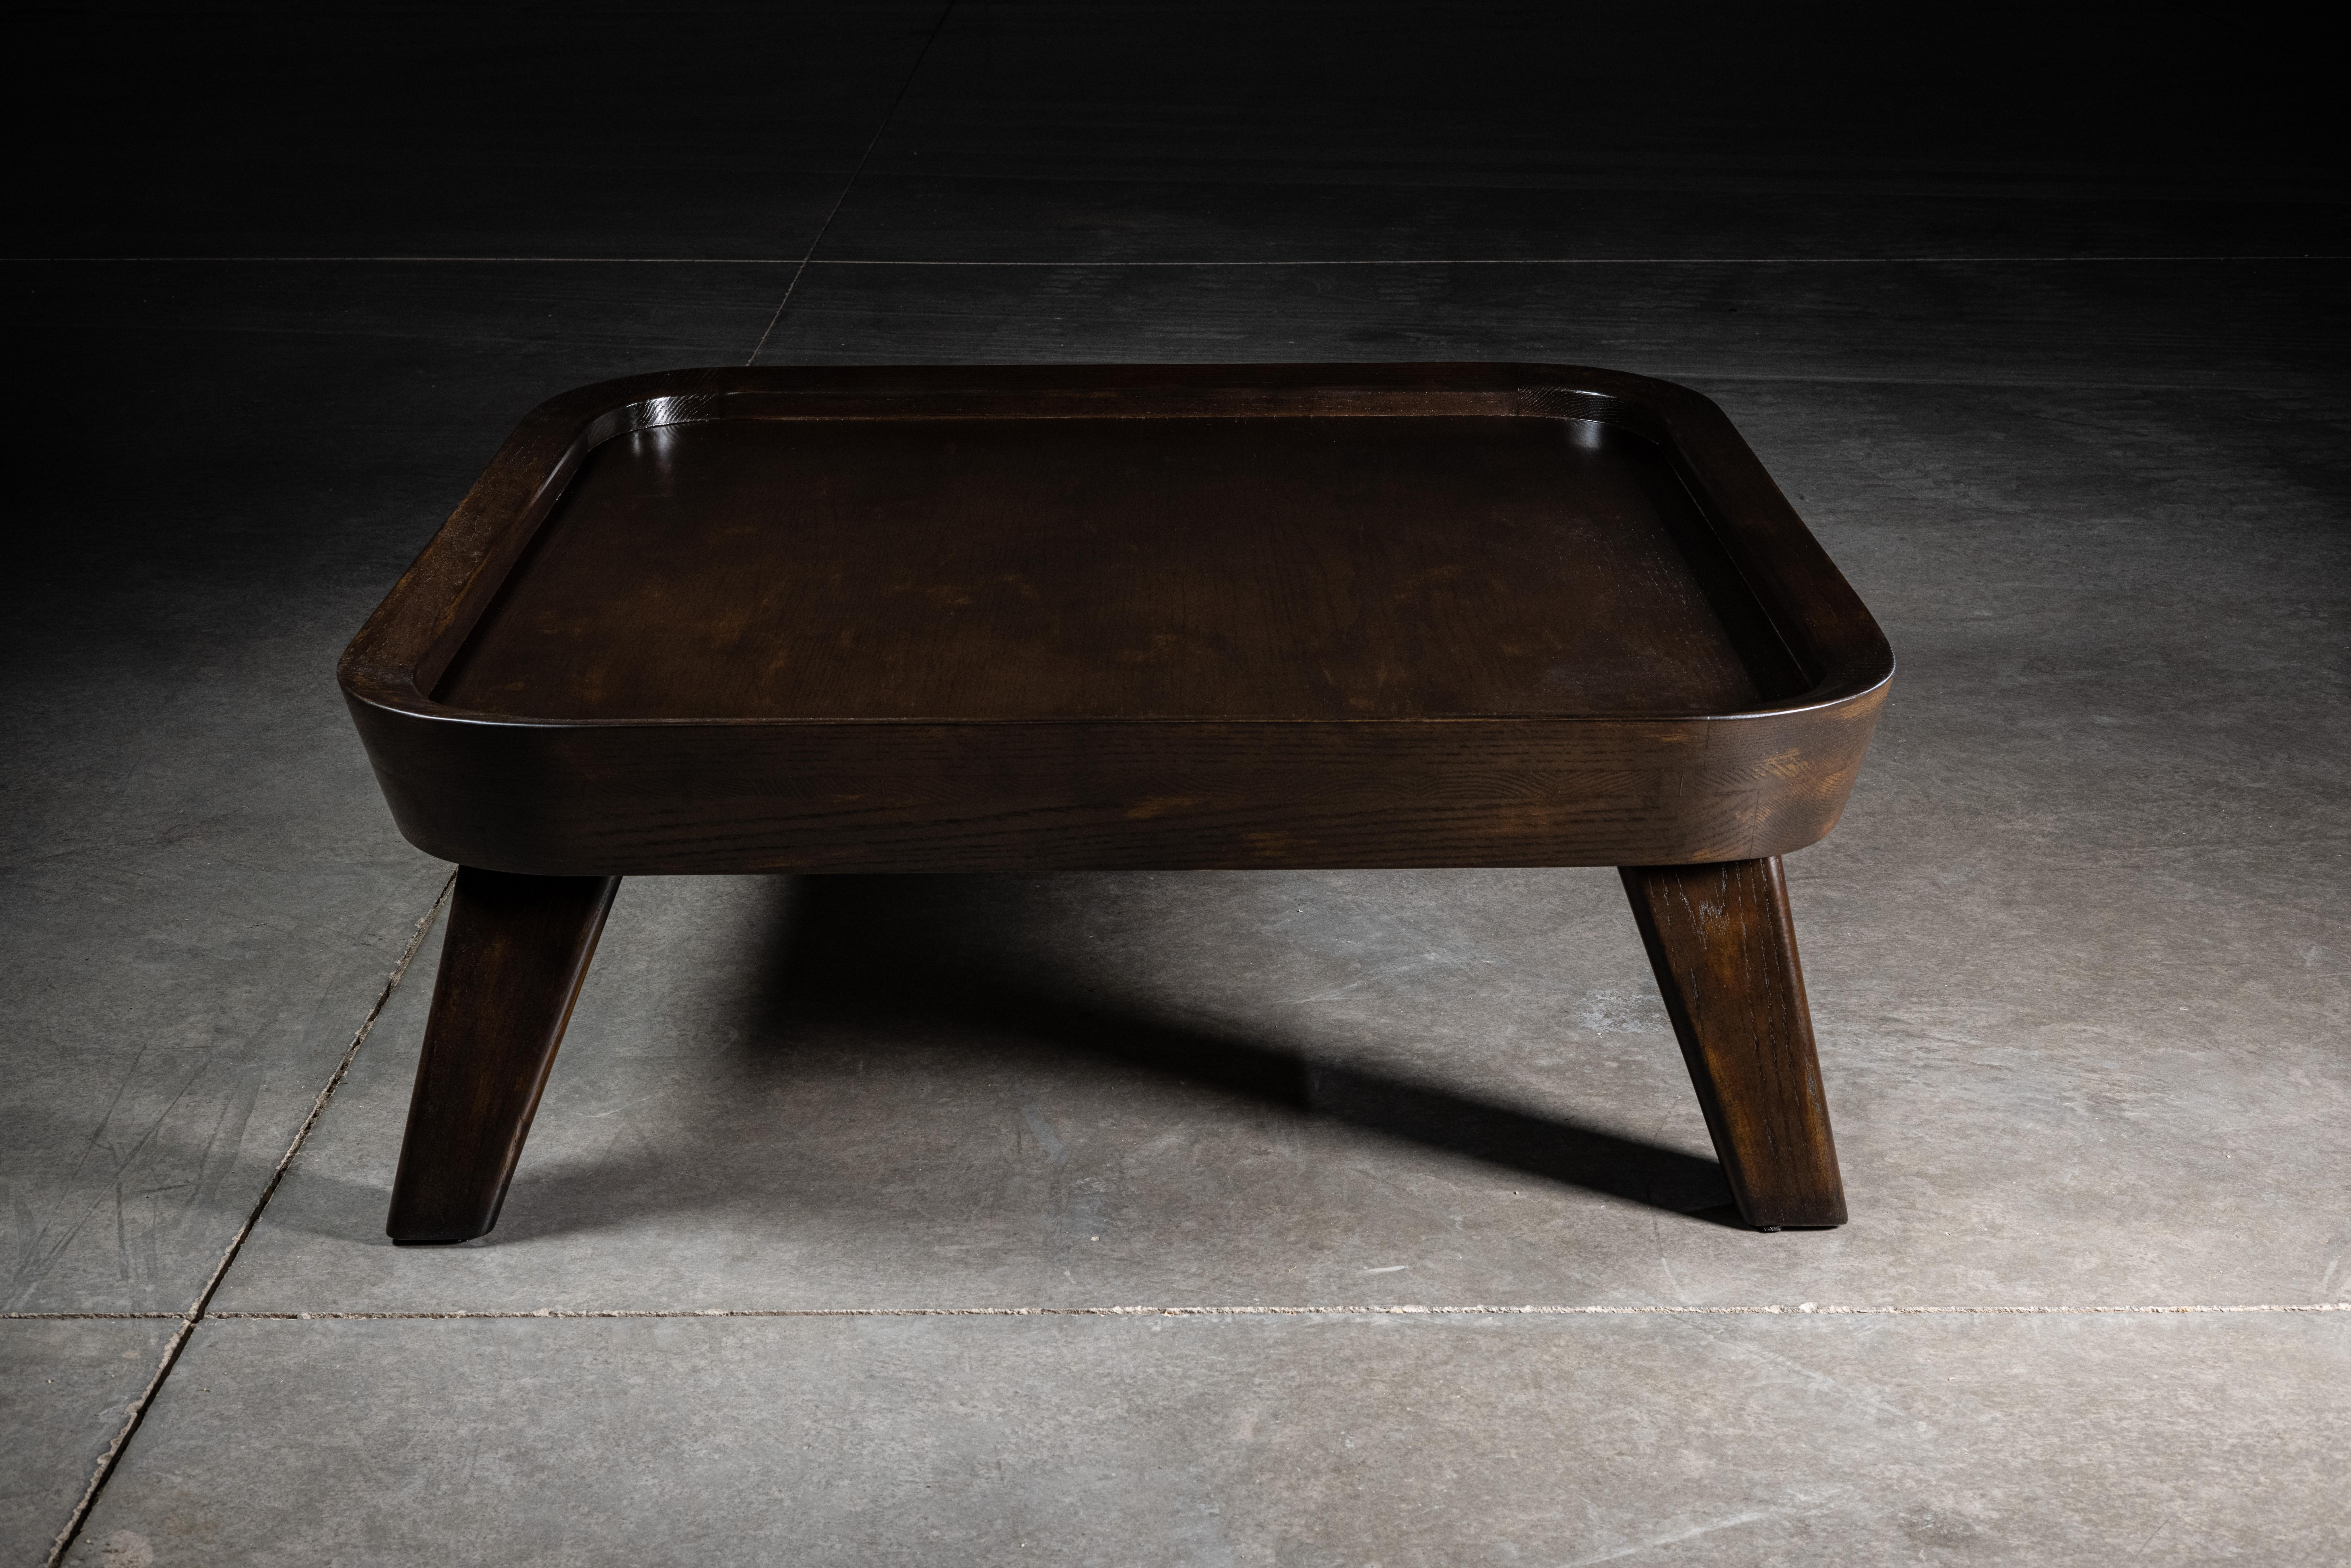 Table basse en chêne brun, inspirée des designs organiques de Clara Porset, pour qui l'équilibre entre une exploration sans concession de la modernité et une insistance tout aussi têtue sur la tradition était sa vision même.


 